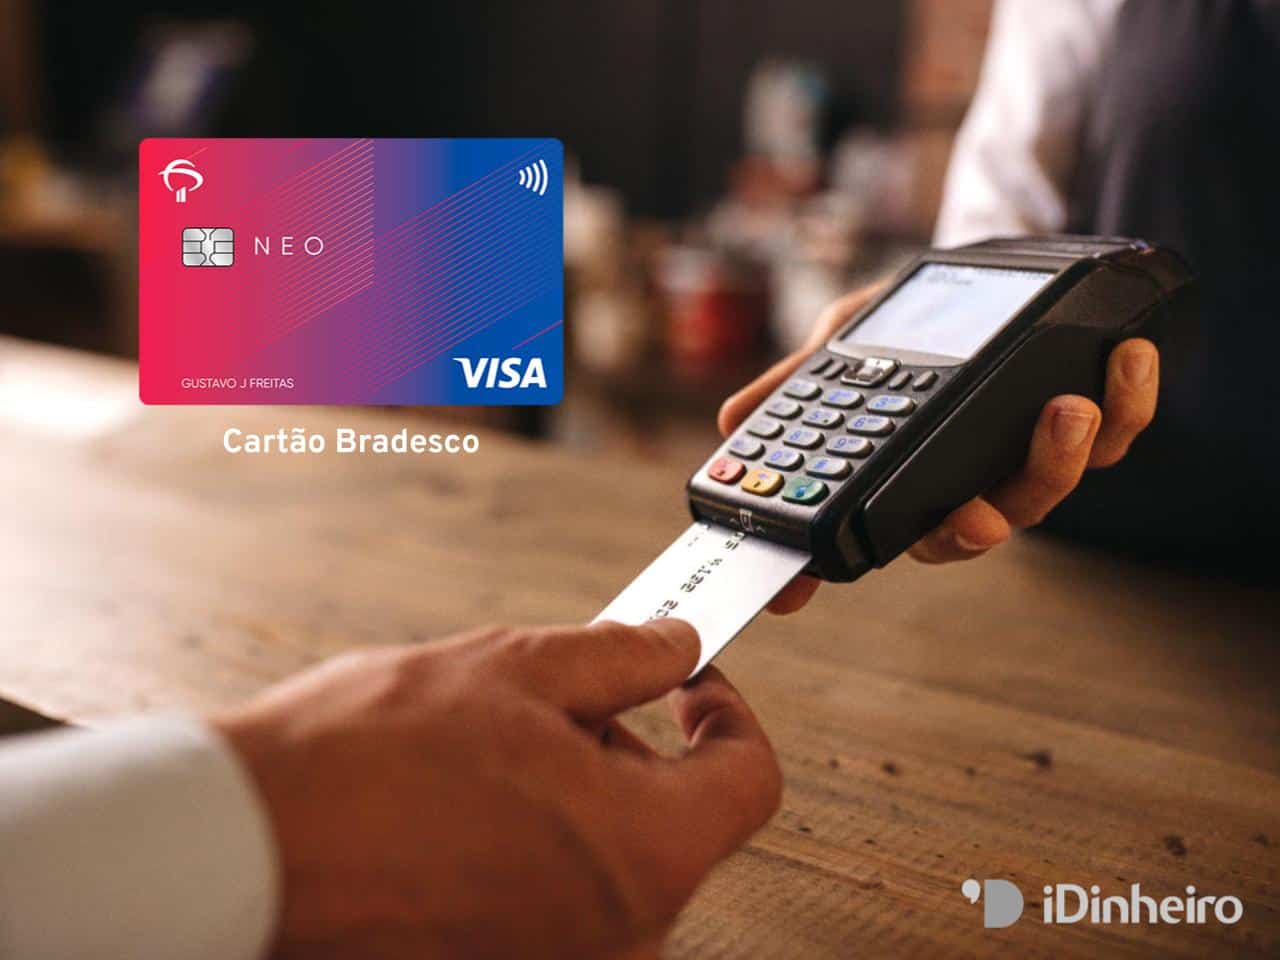 Cartões de crédito Bradesco: análise e dicas para conseguir os melhores